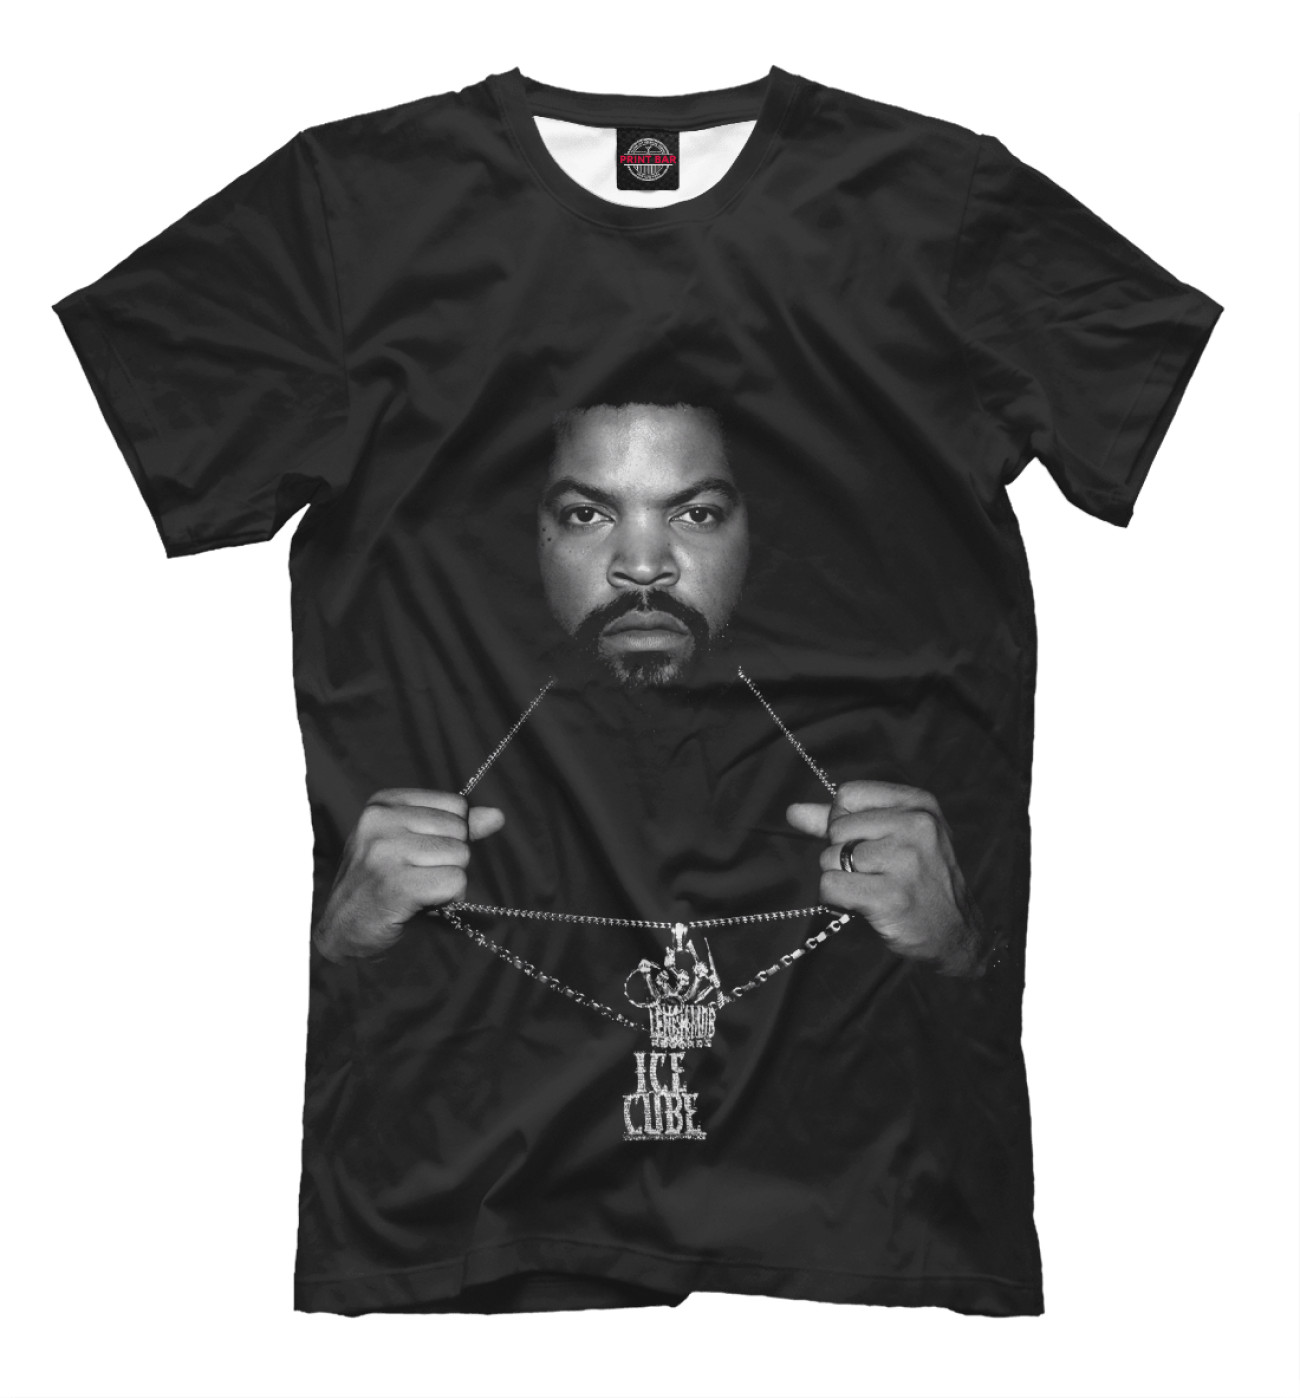 Мужская Футболка Ice Cube, артикул: RLG-884826-fut-2